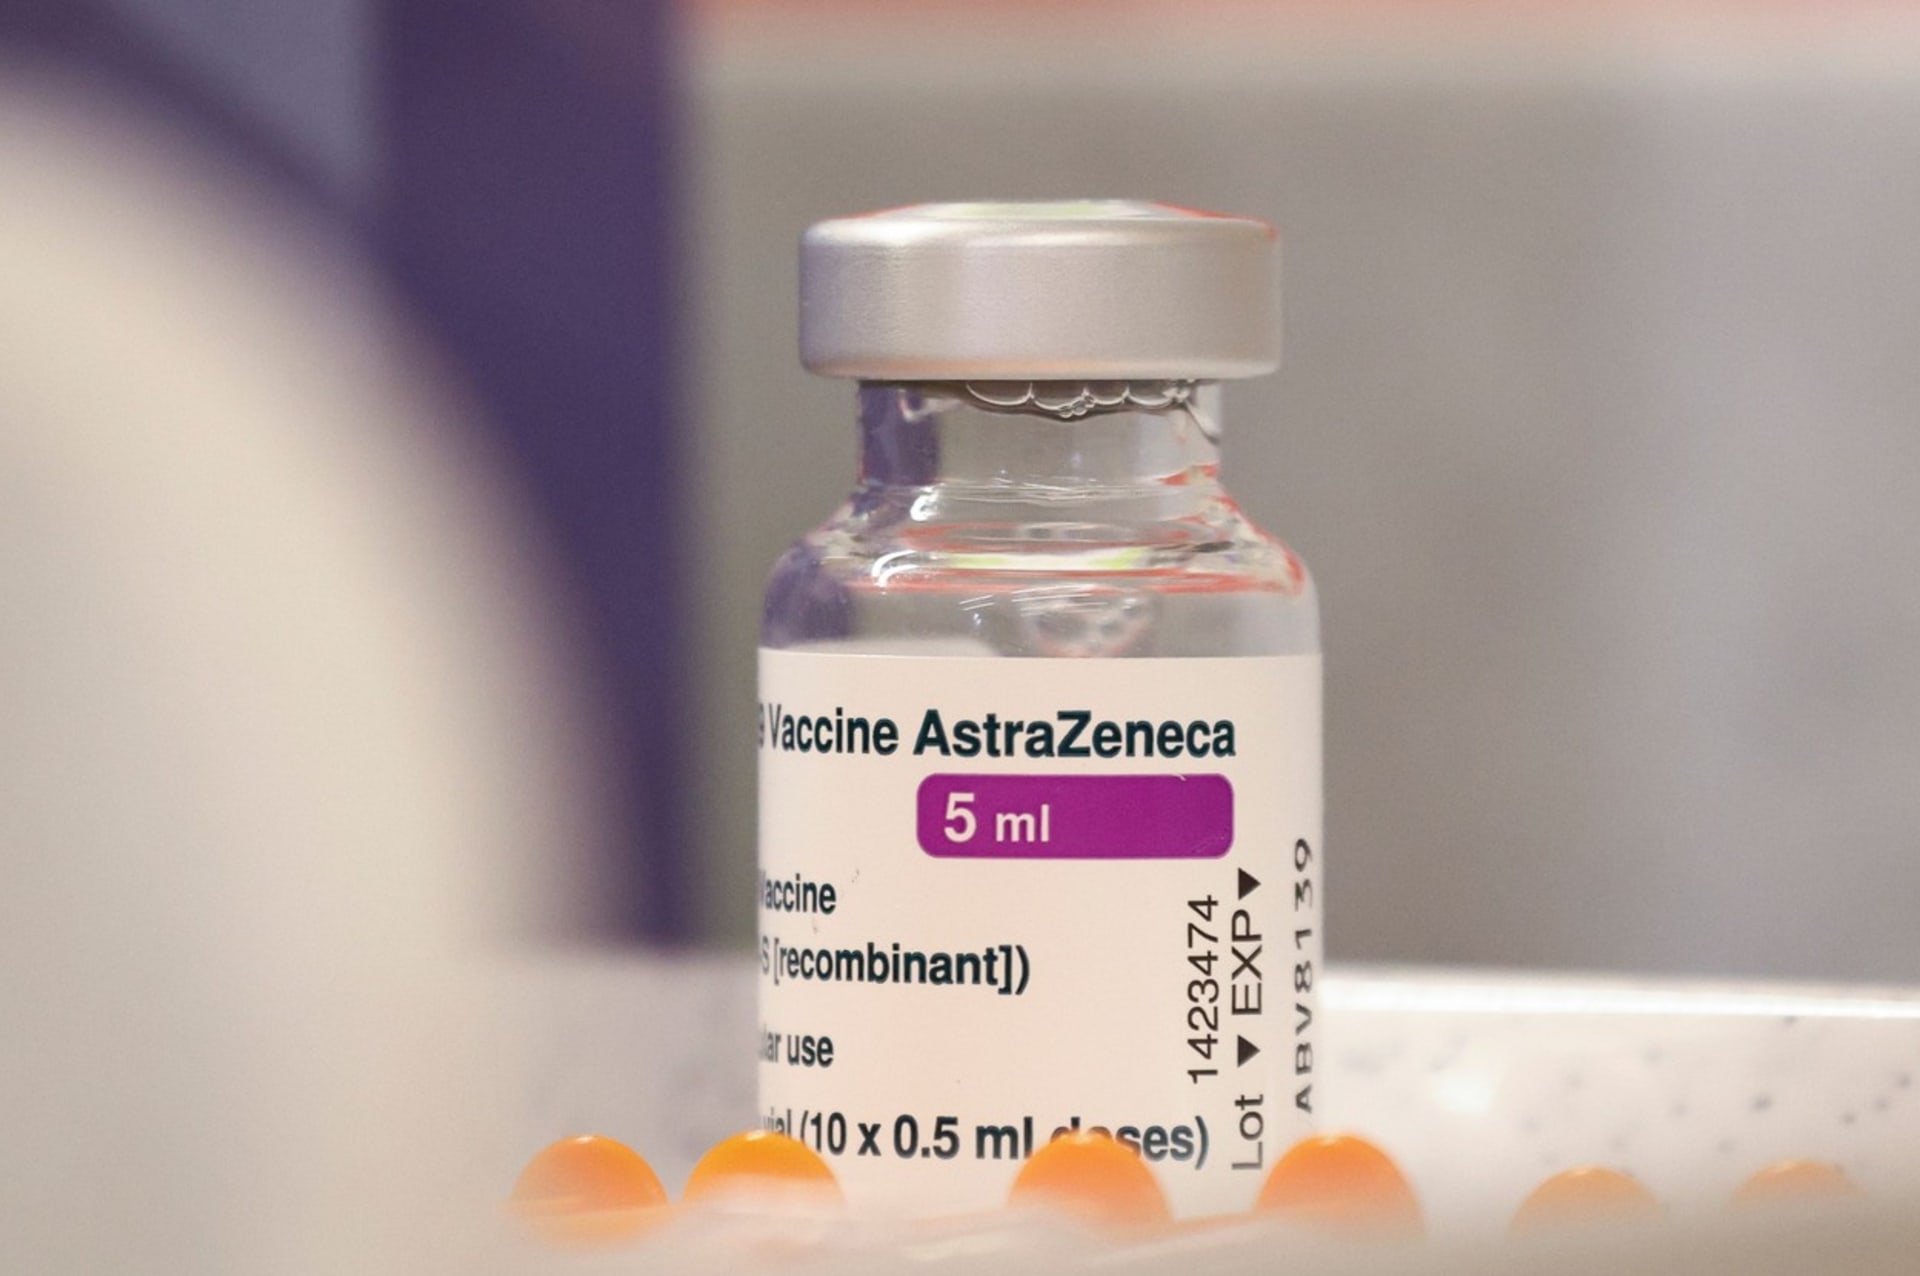 Britskou vakcínu od společnosti AstraZeneca dlouhodobě provází kritika.